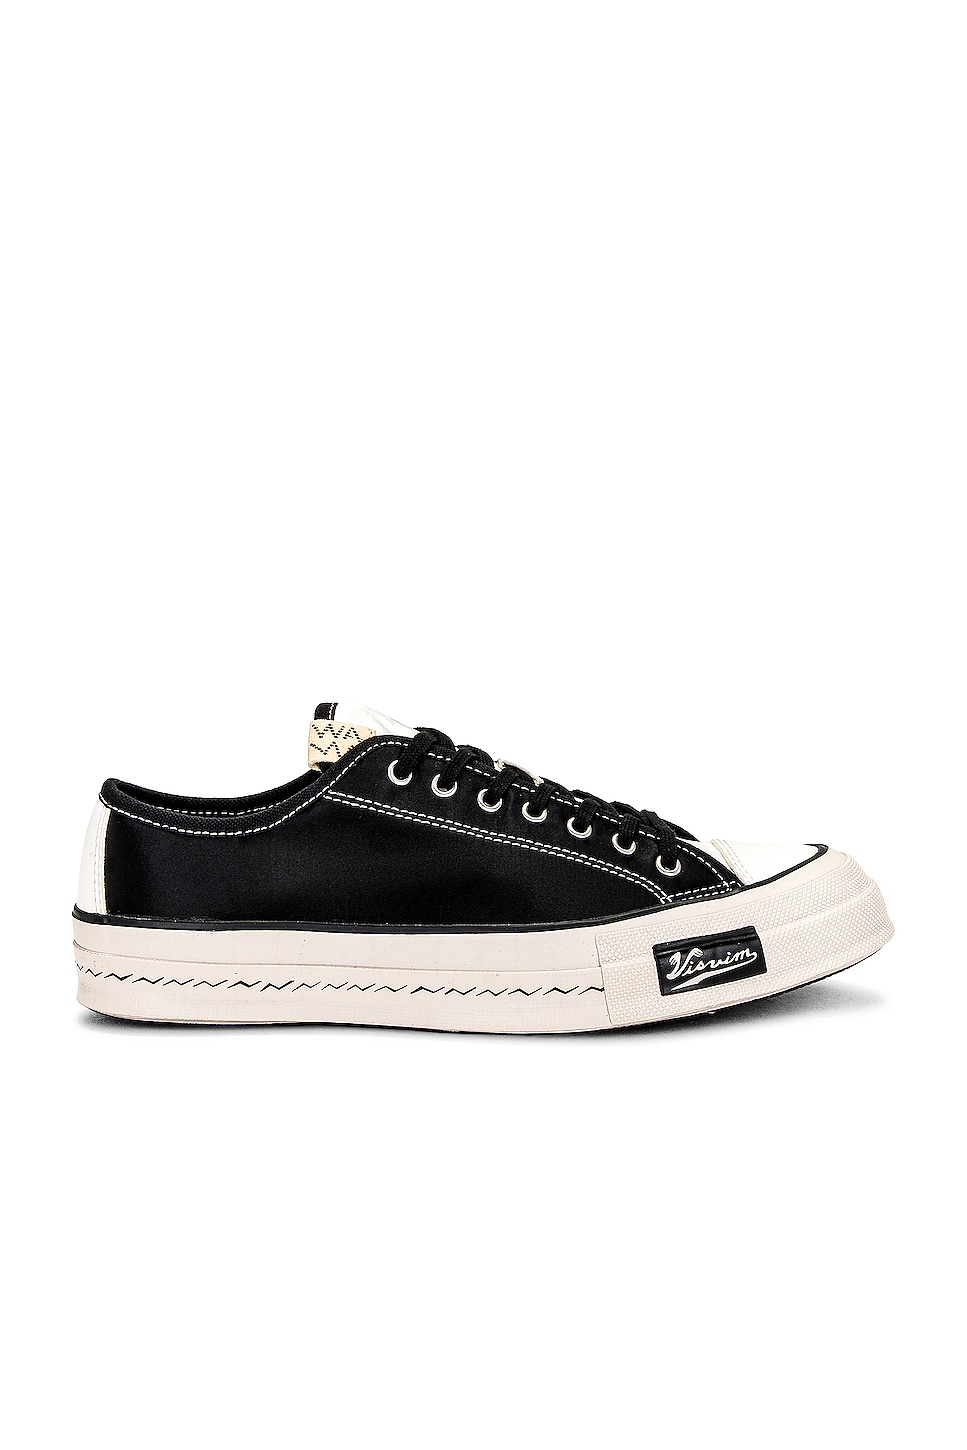 Image 1 of Visvim Skagway Lo Sneaker in Black